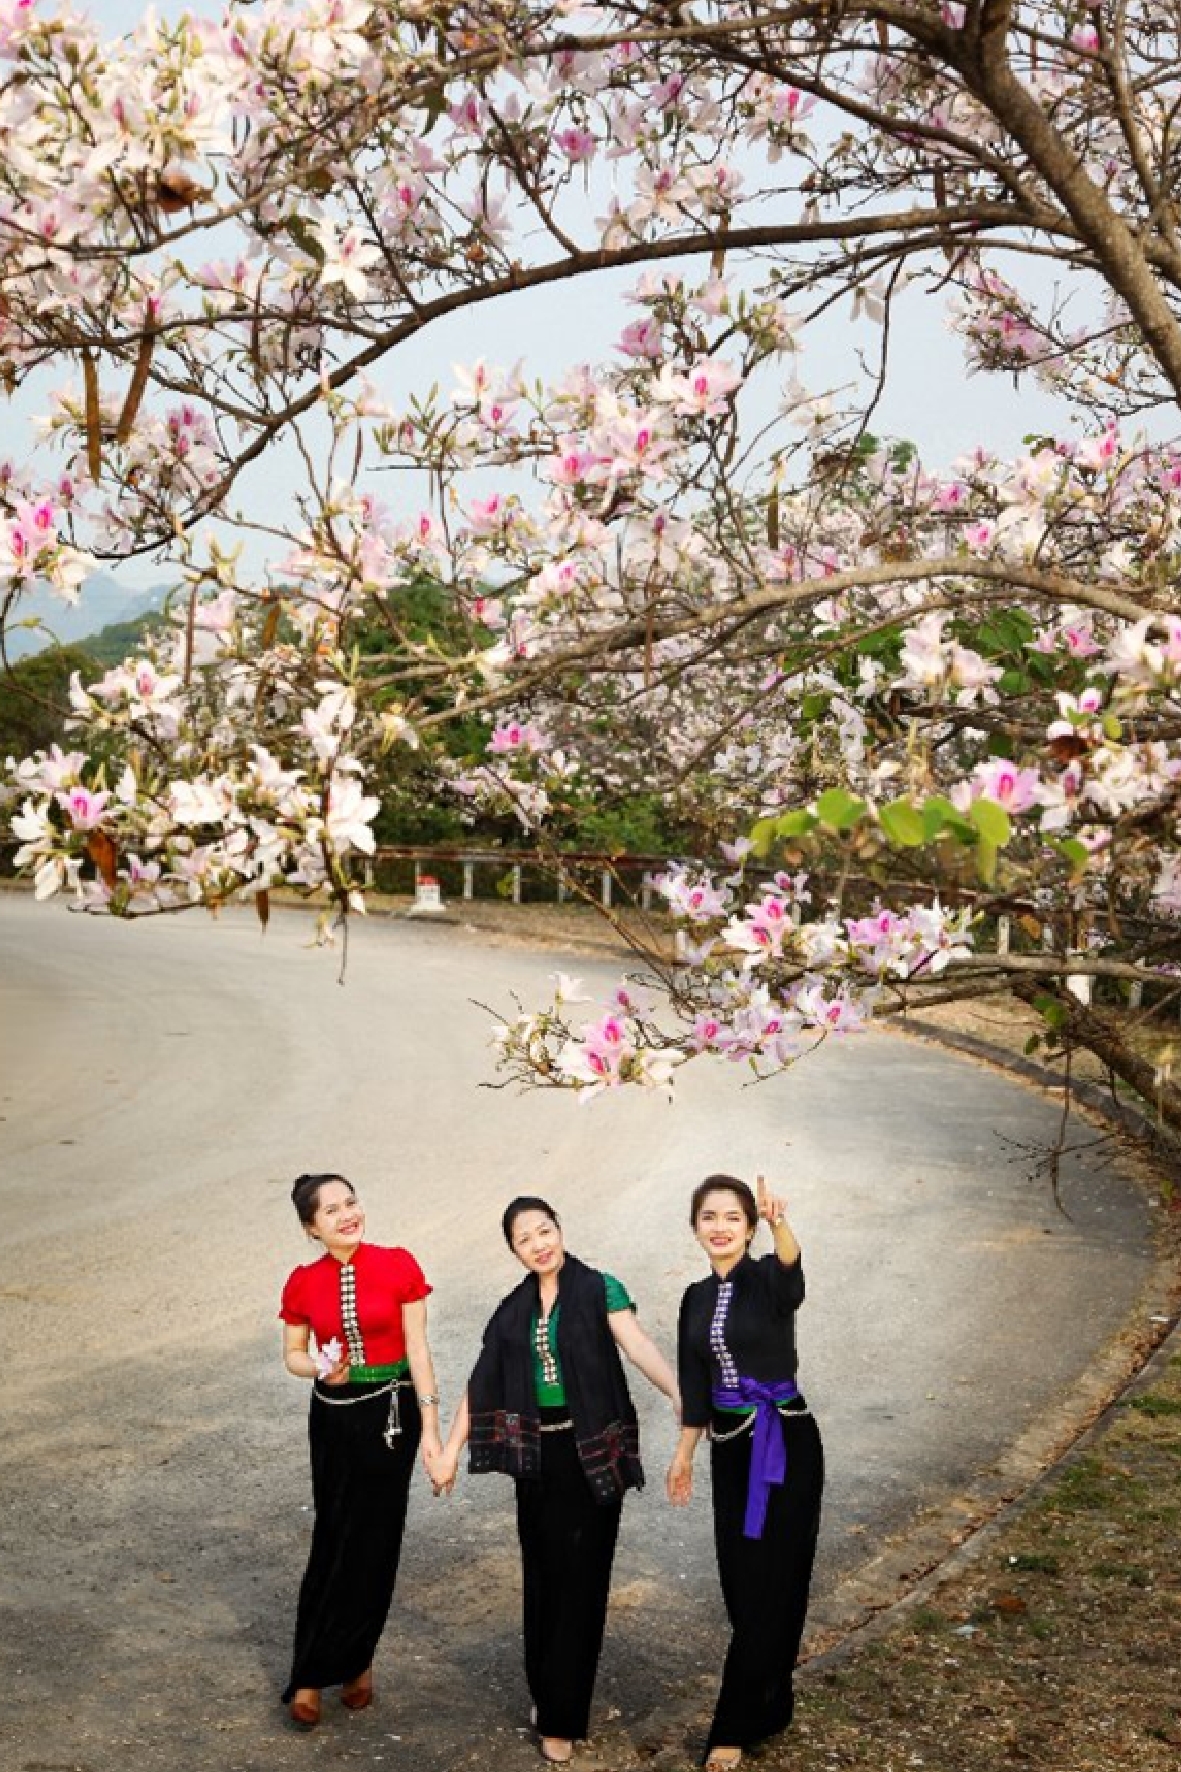 Vẻ đẹp của hoa ban góp phần thu hút du lịch tỉnh Điện Biên (Ảnh tư liệu)